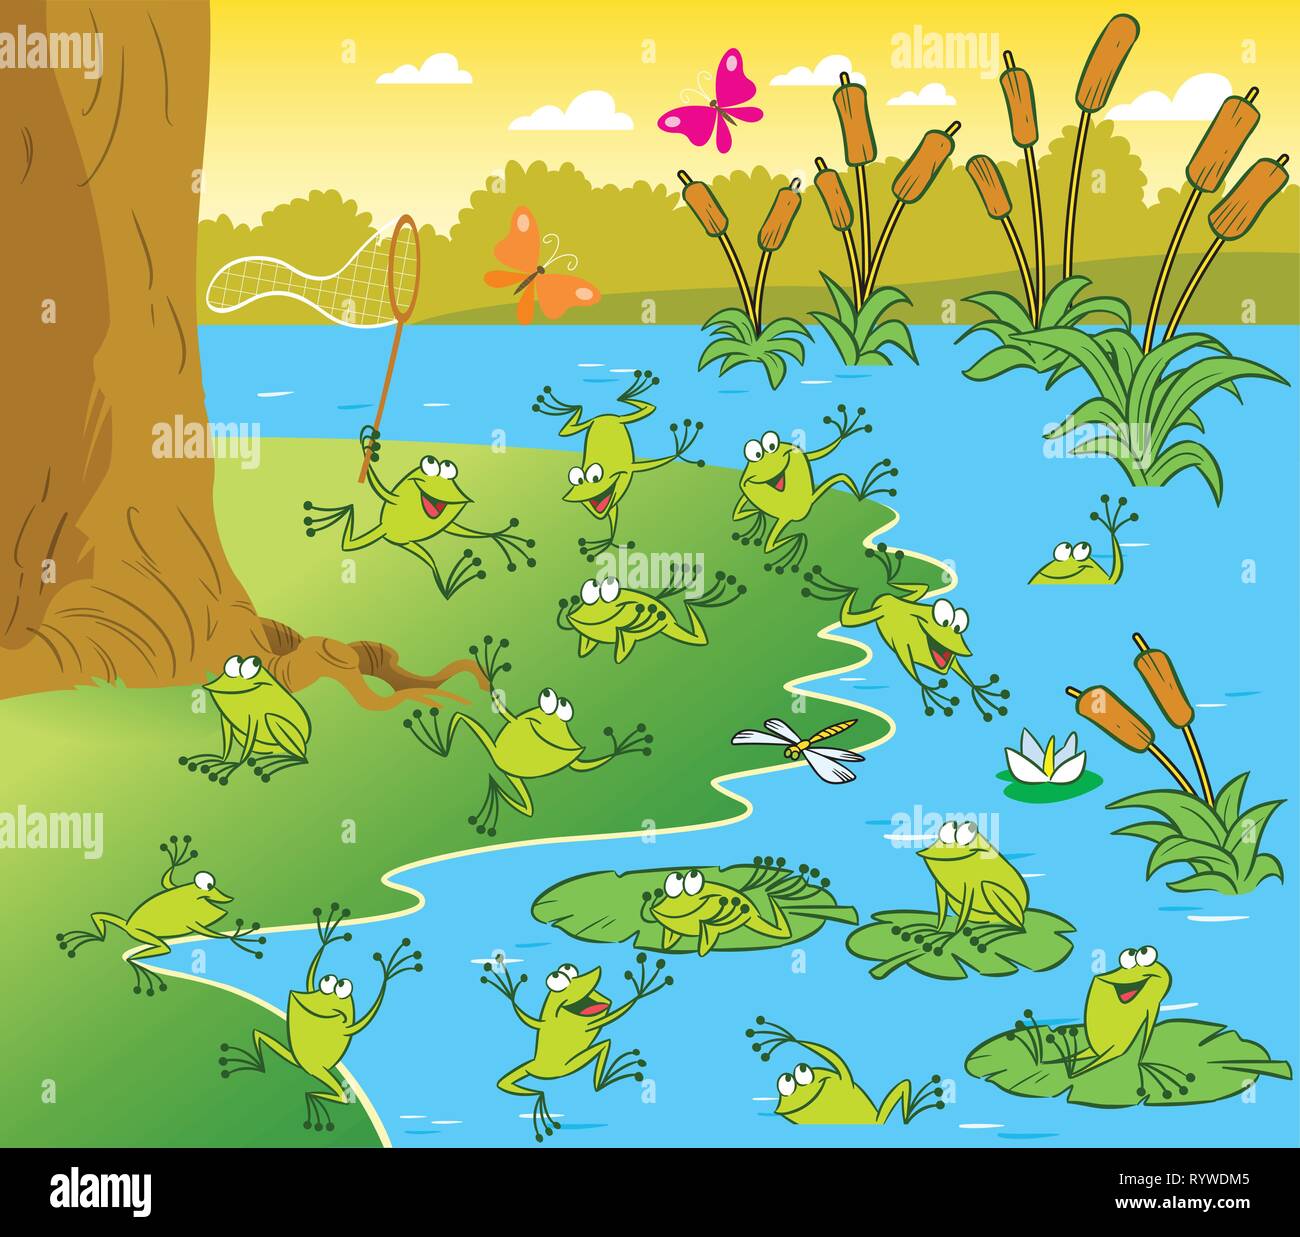 L'illustration montre un étang avec des grenouilles sur une journée ensoleillée. Photo faite dans un style cartoon Illustration de Vecteur